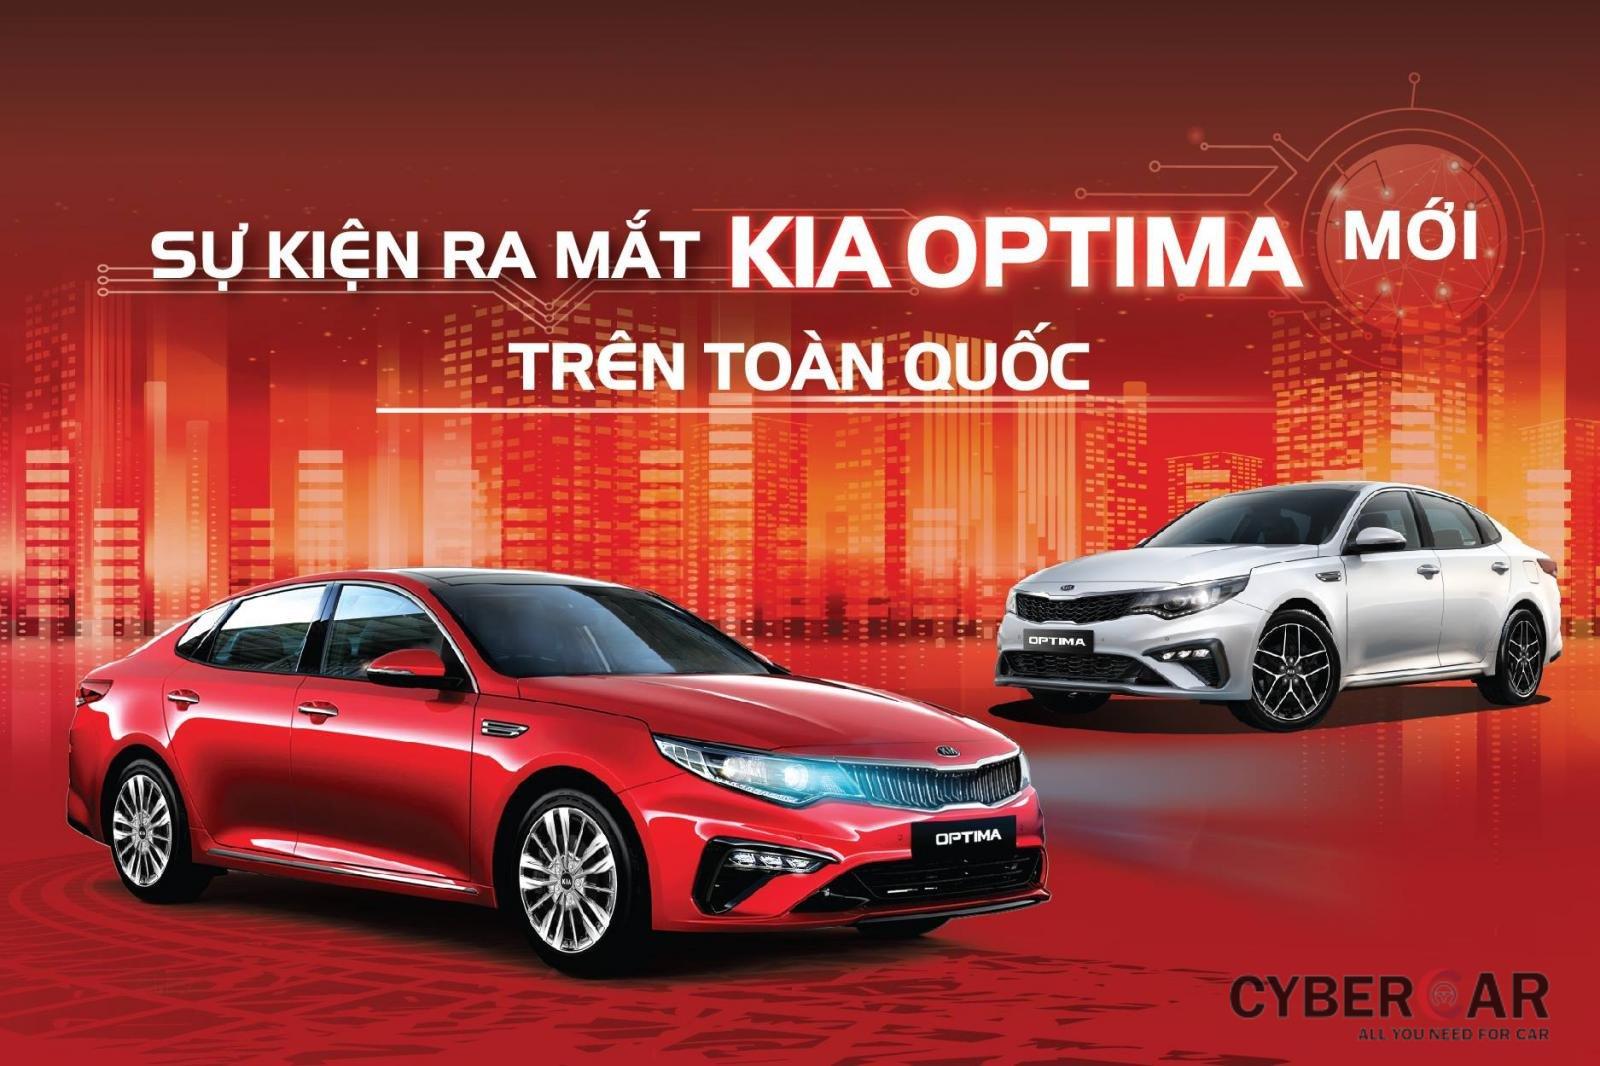 Kia Optima 2019 sẽ chính thức ra mắt thị trường Việt vào ngày 20/4.